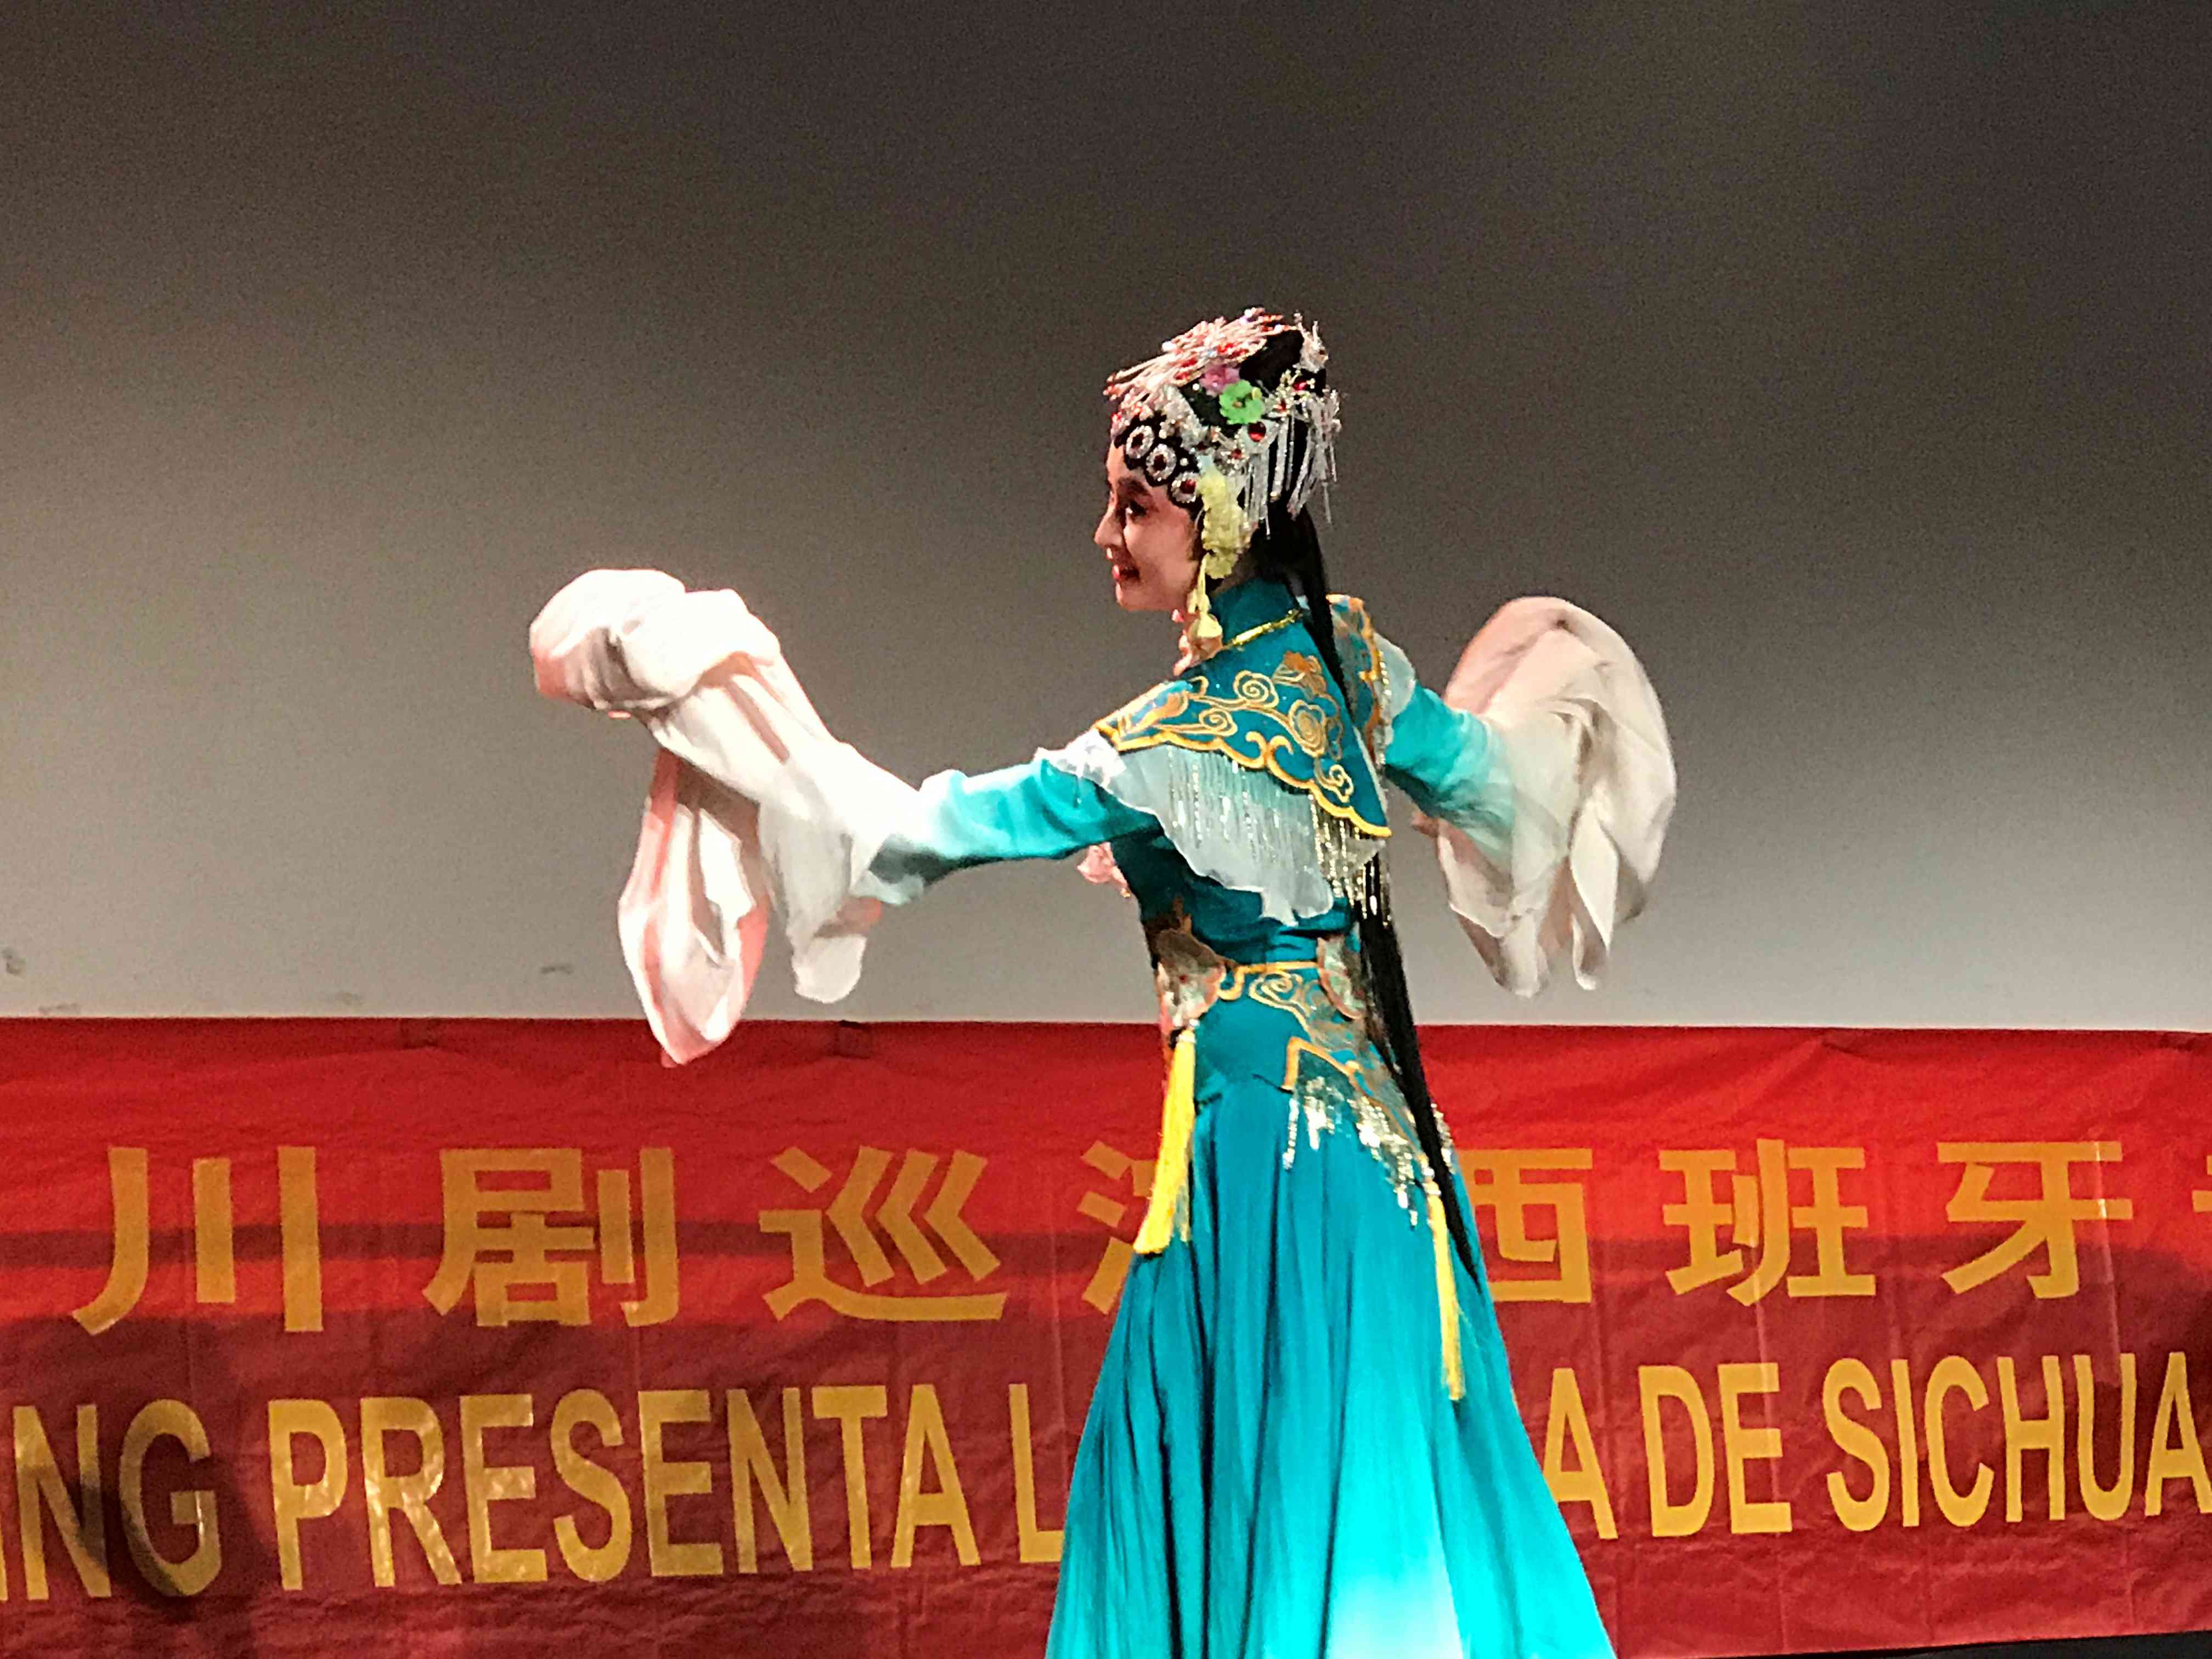 重庆大学川剧艺术团巡演西班牙--展示中华戏曲